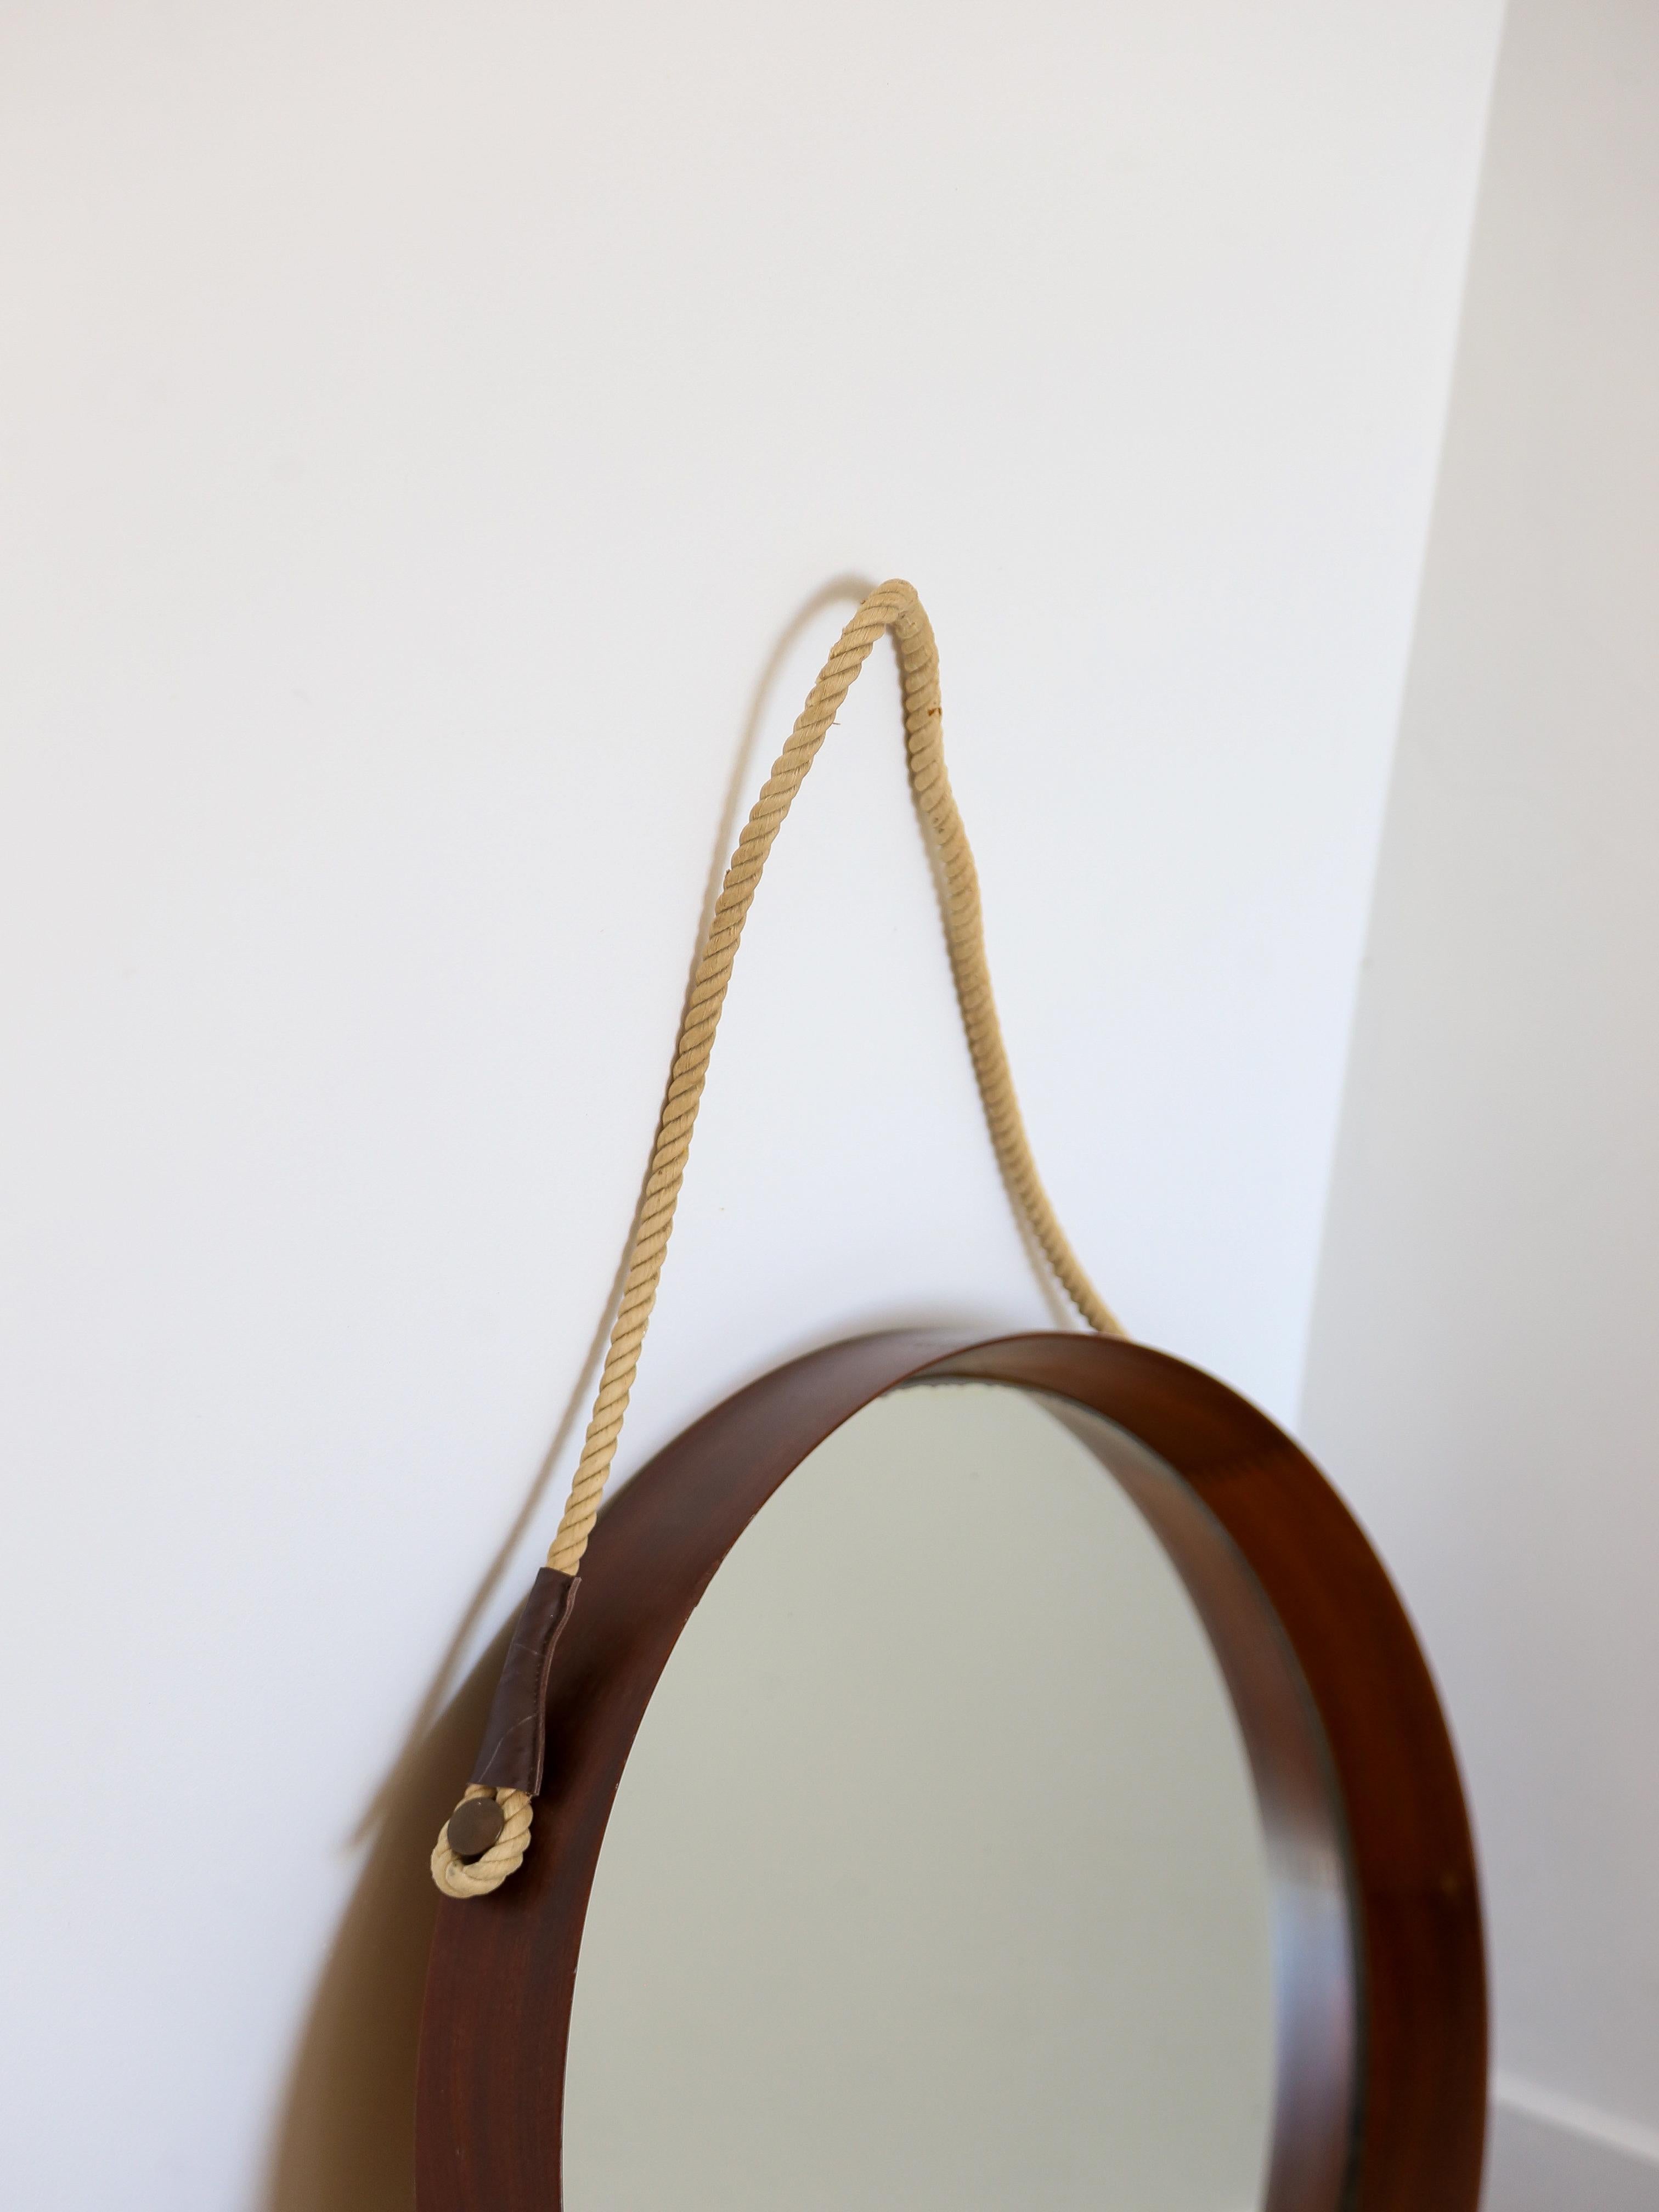 Italienischer Mid Century Modern runder Wandspiegel.

Der Rahmen des Spiegels ist aus Teakholz gefertigt, das für seine natürliche Schönheit und Haltbarkeit bekannt ist. Teakholz zeichnet sich durch eine ausgeprägte Maserung und eine warme, satte